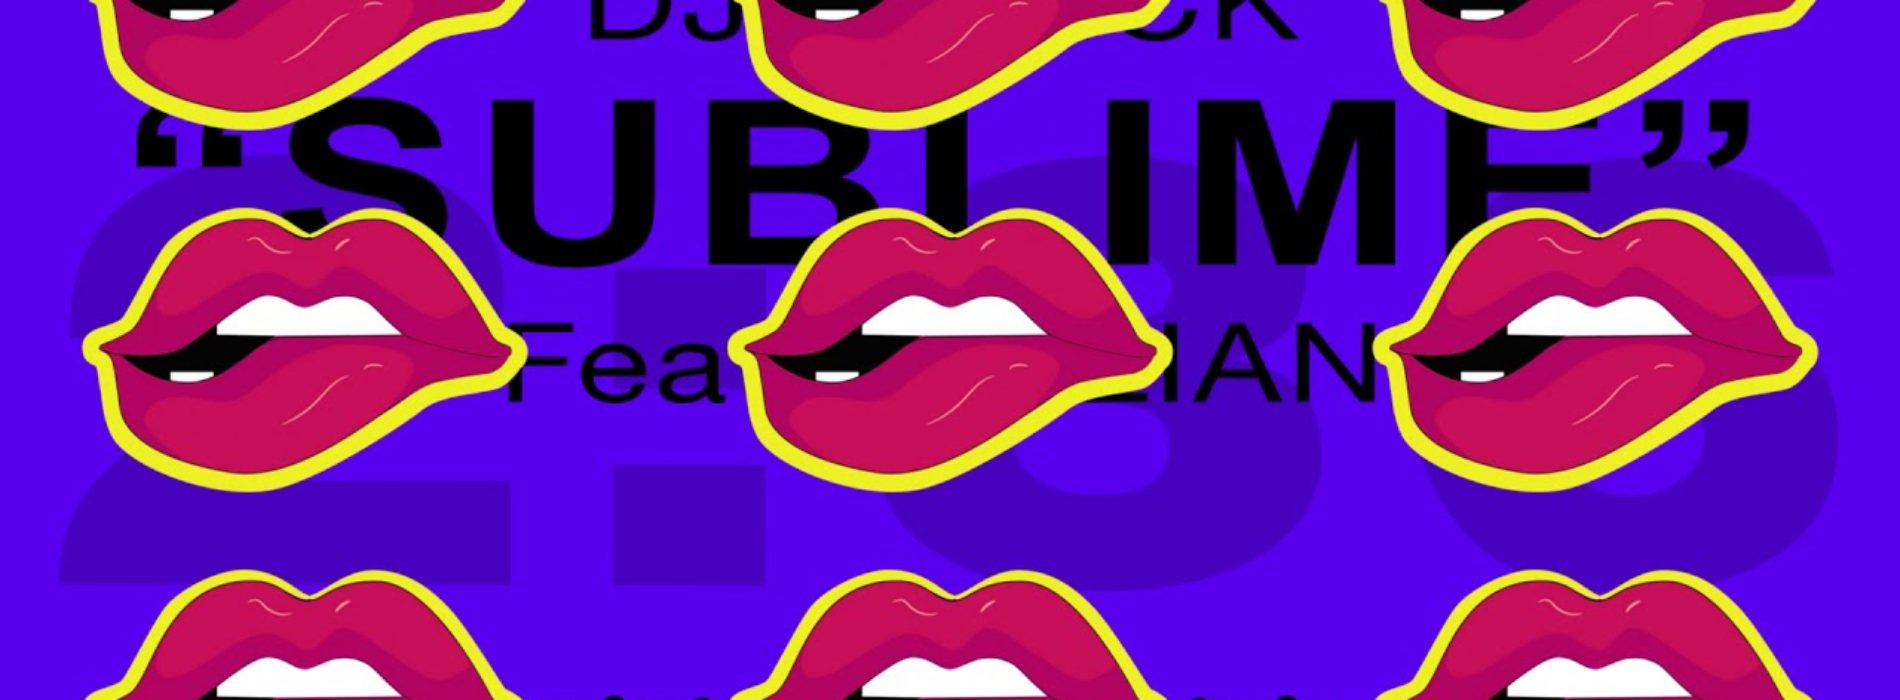 Dj M’rick – Sublime feat. Rolian (Official Video Cover)- Janvier 2019